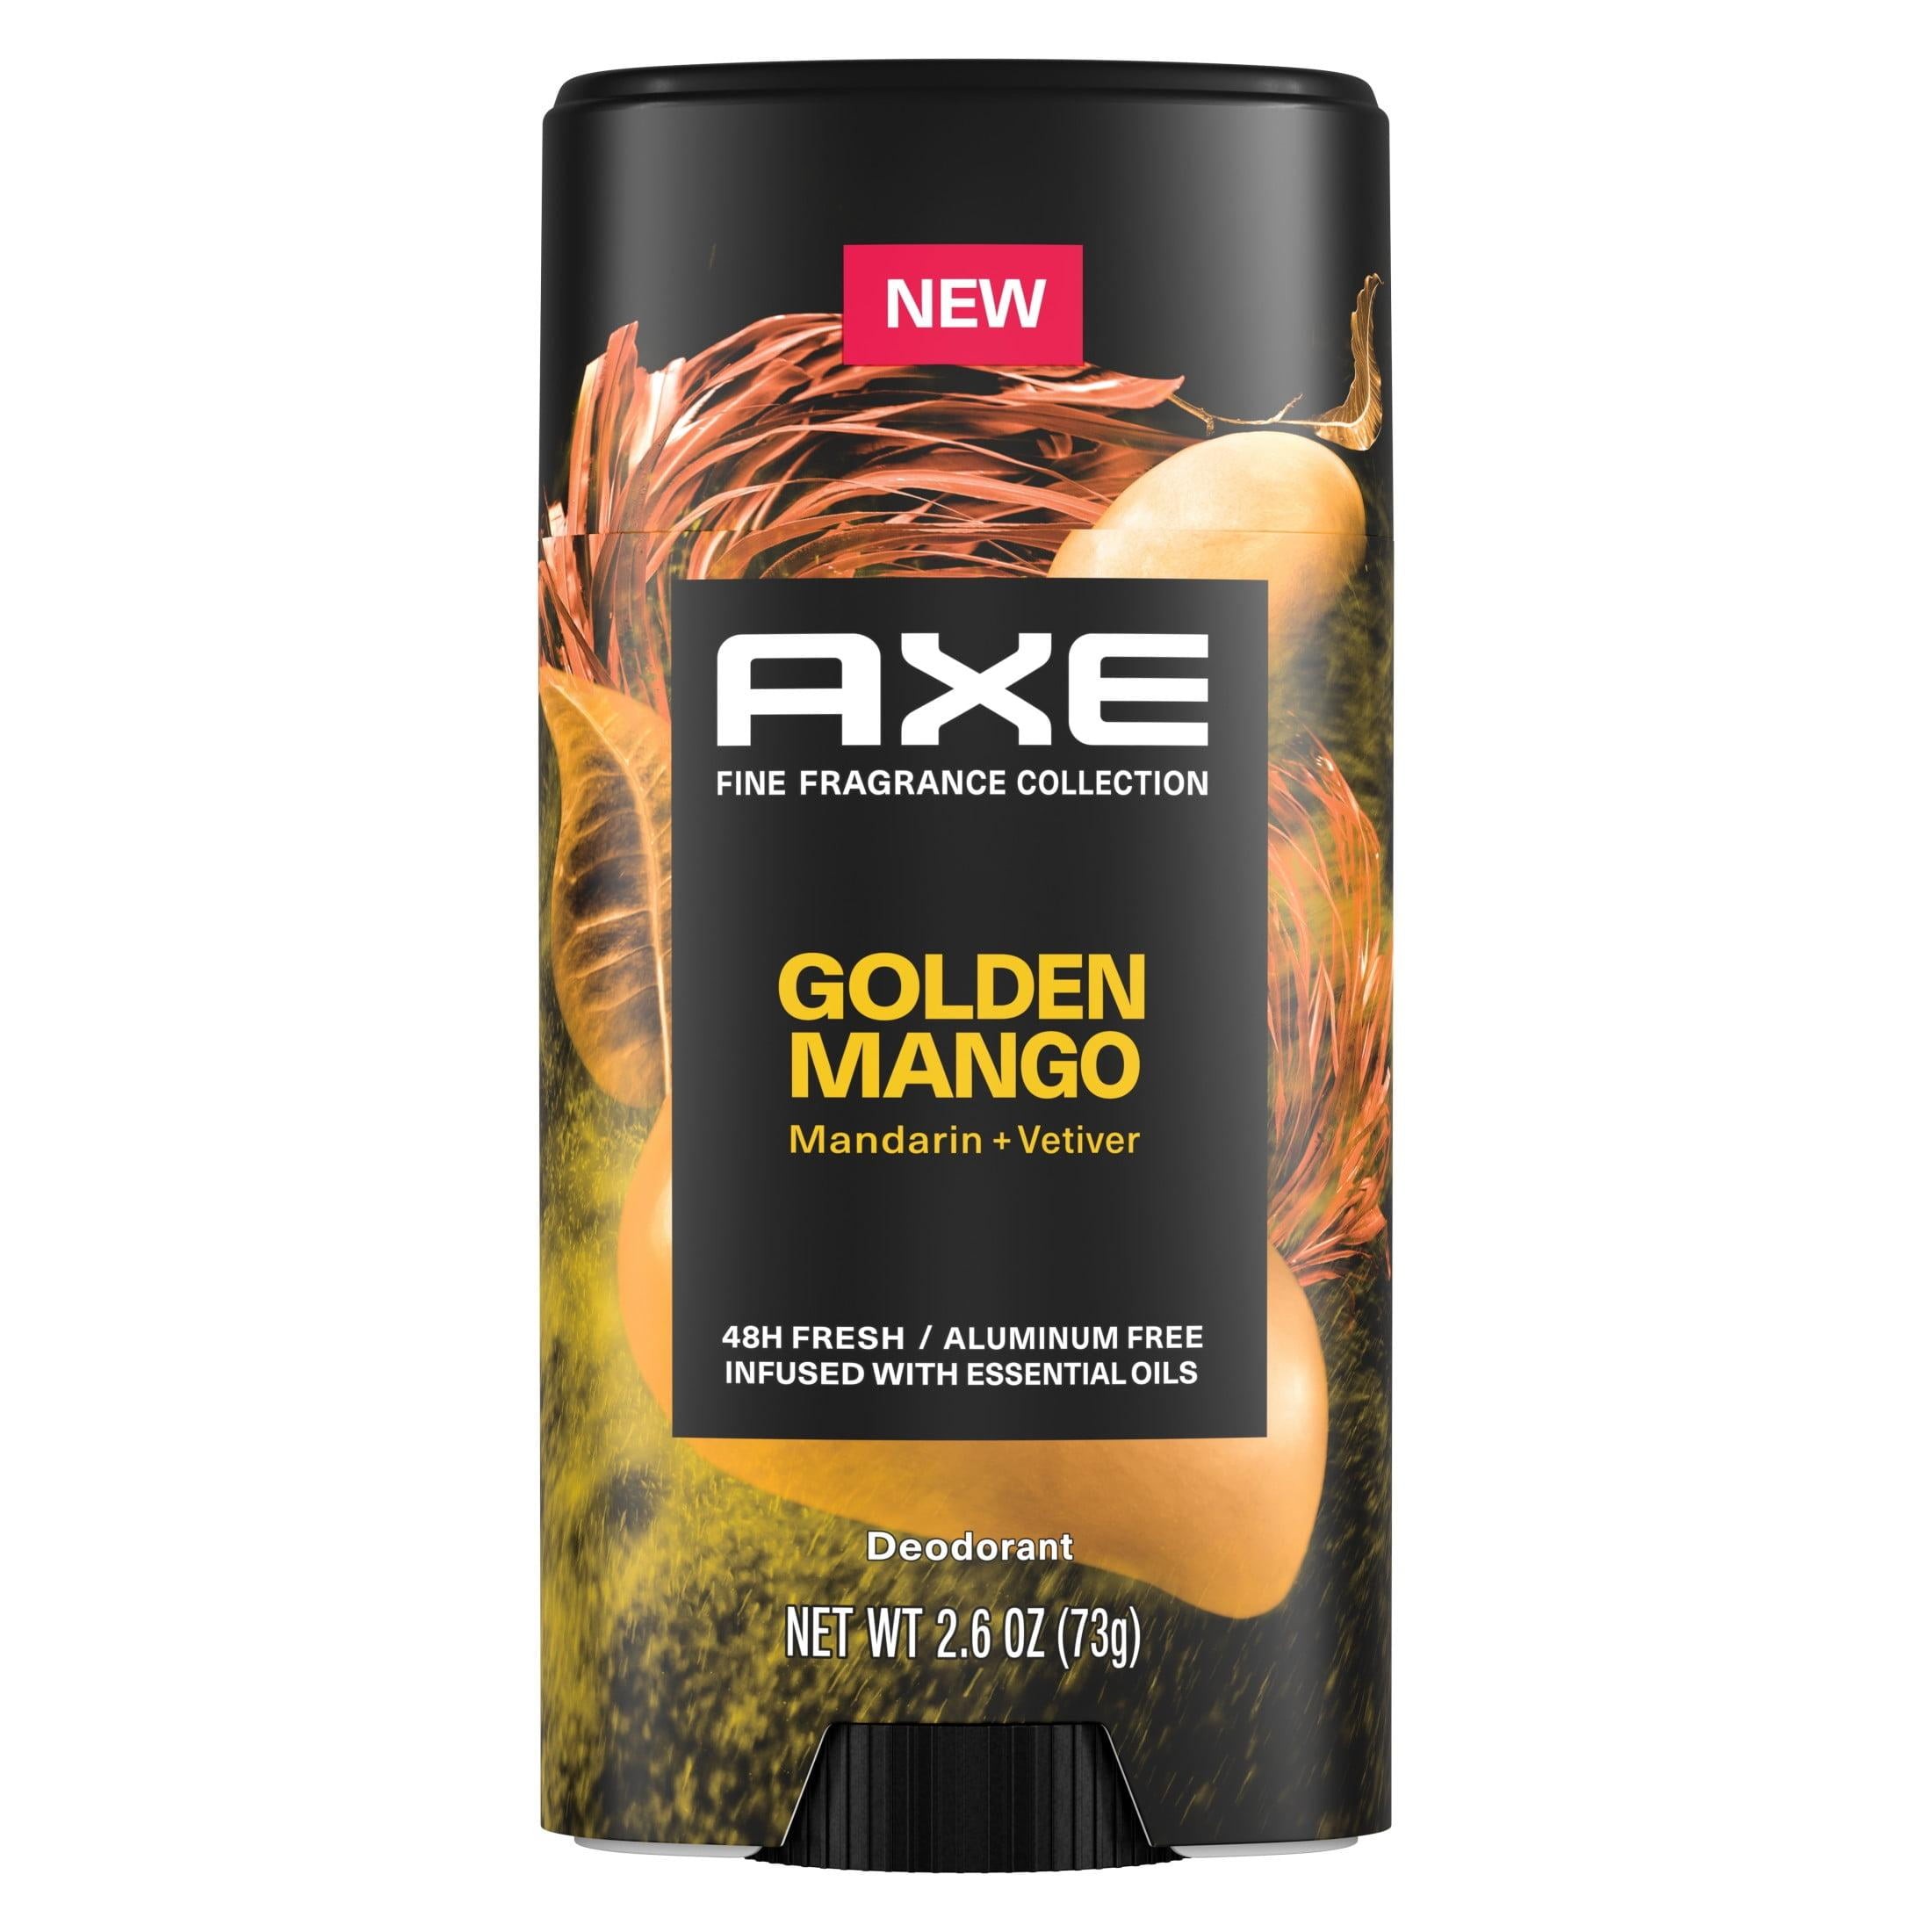 Mejores ofertas e historial de precios de Axe Fine Fragrance